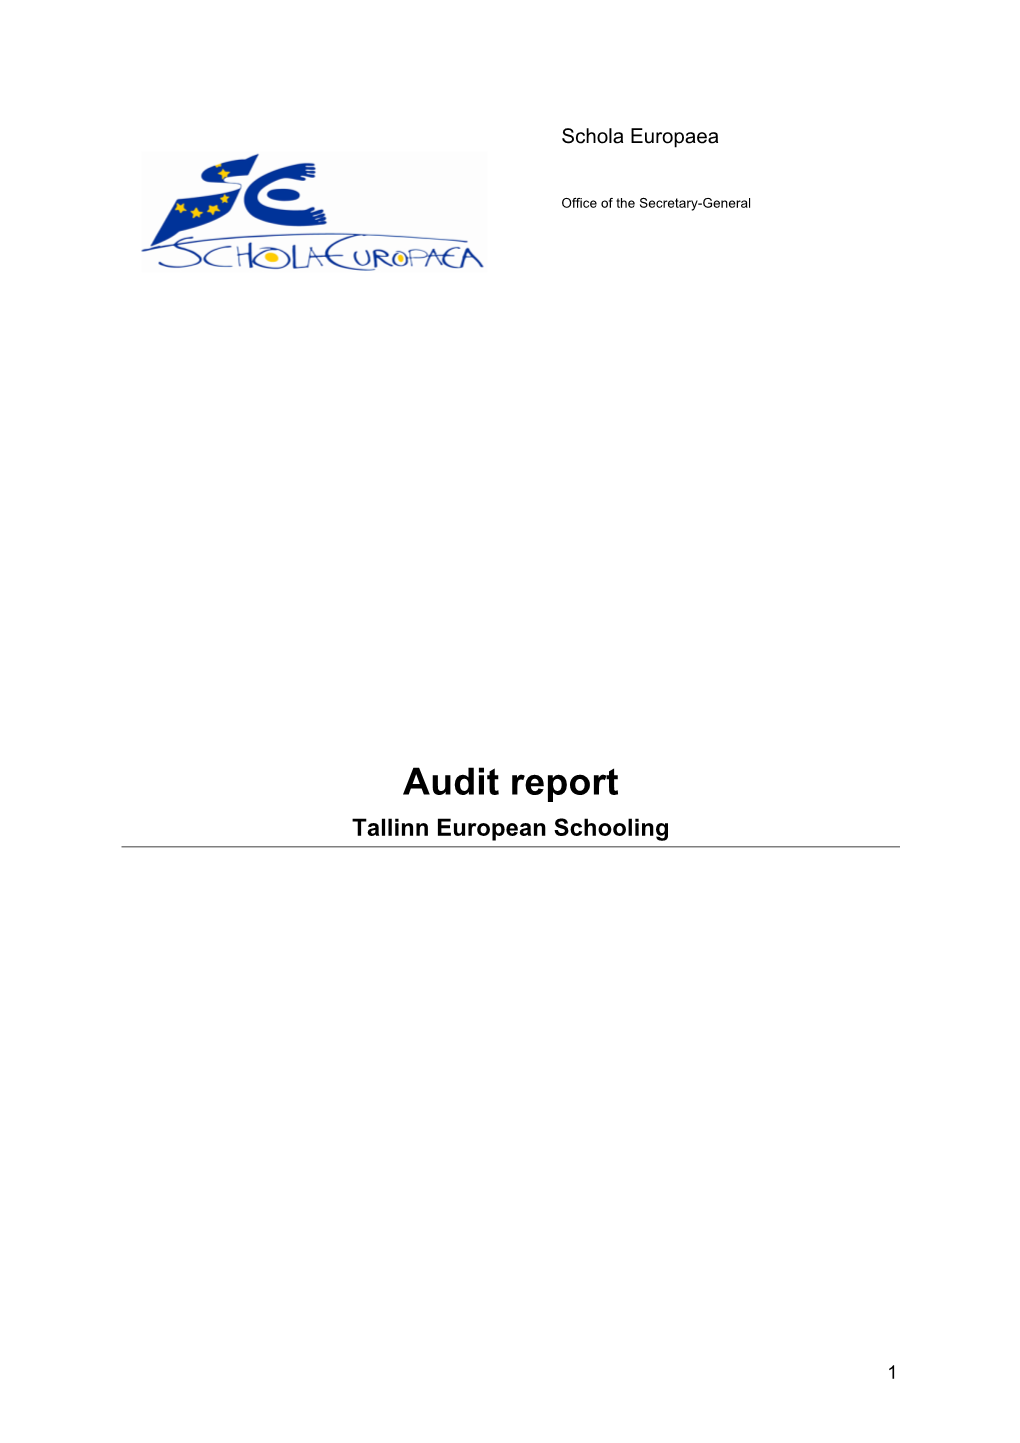 Final Report Tallinn